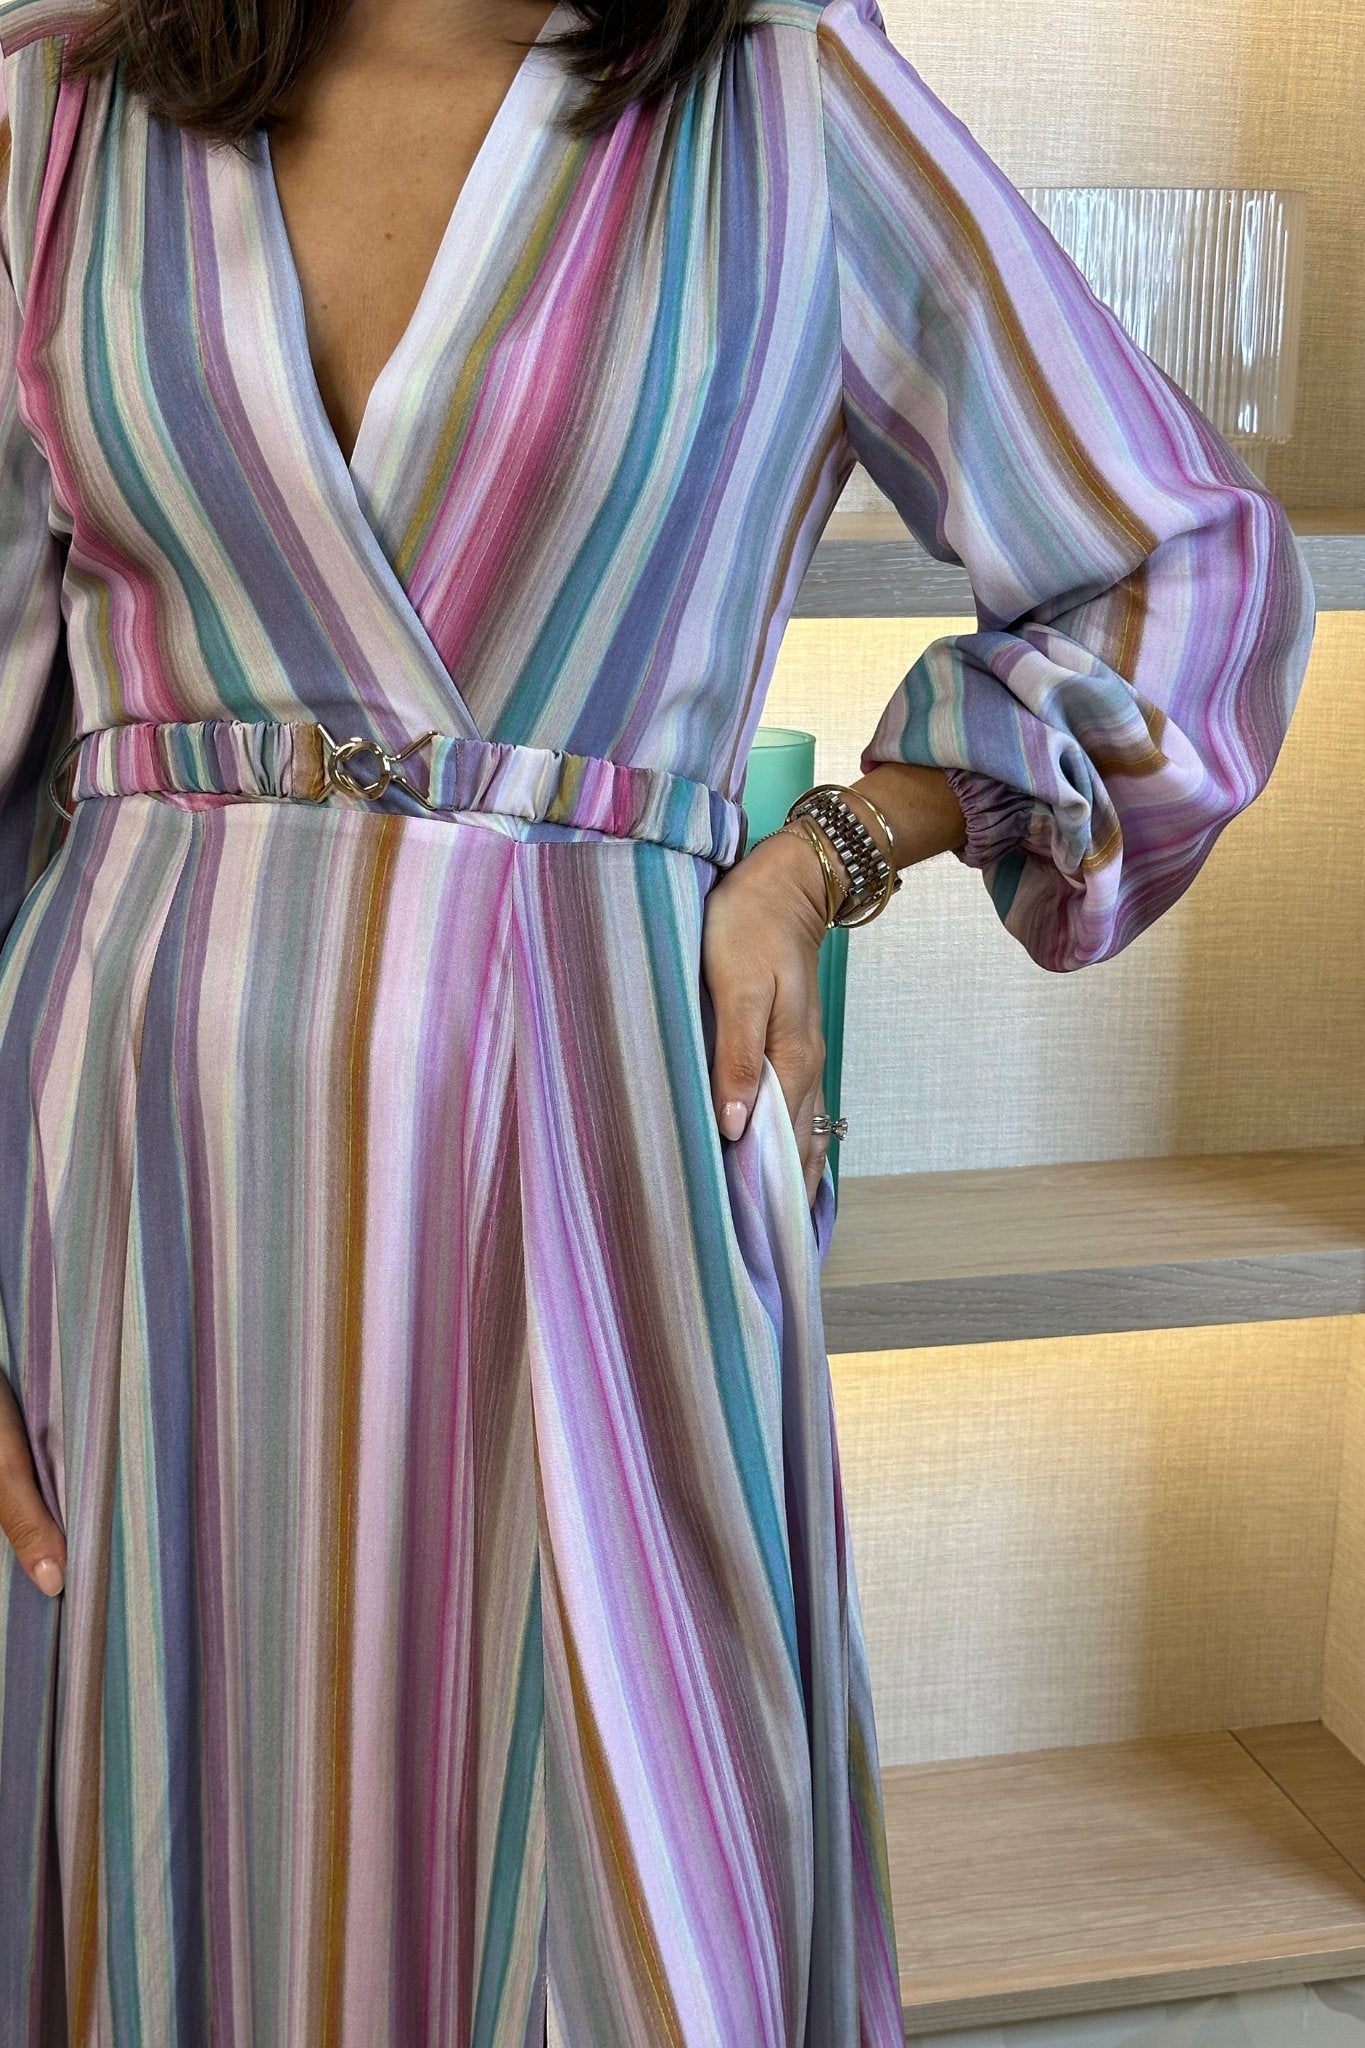 Celine Stripe Wrap Dress In Multi - The Walk in Wardrobe